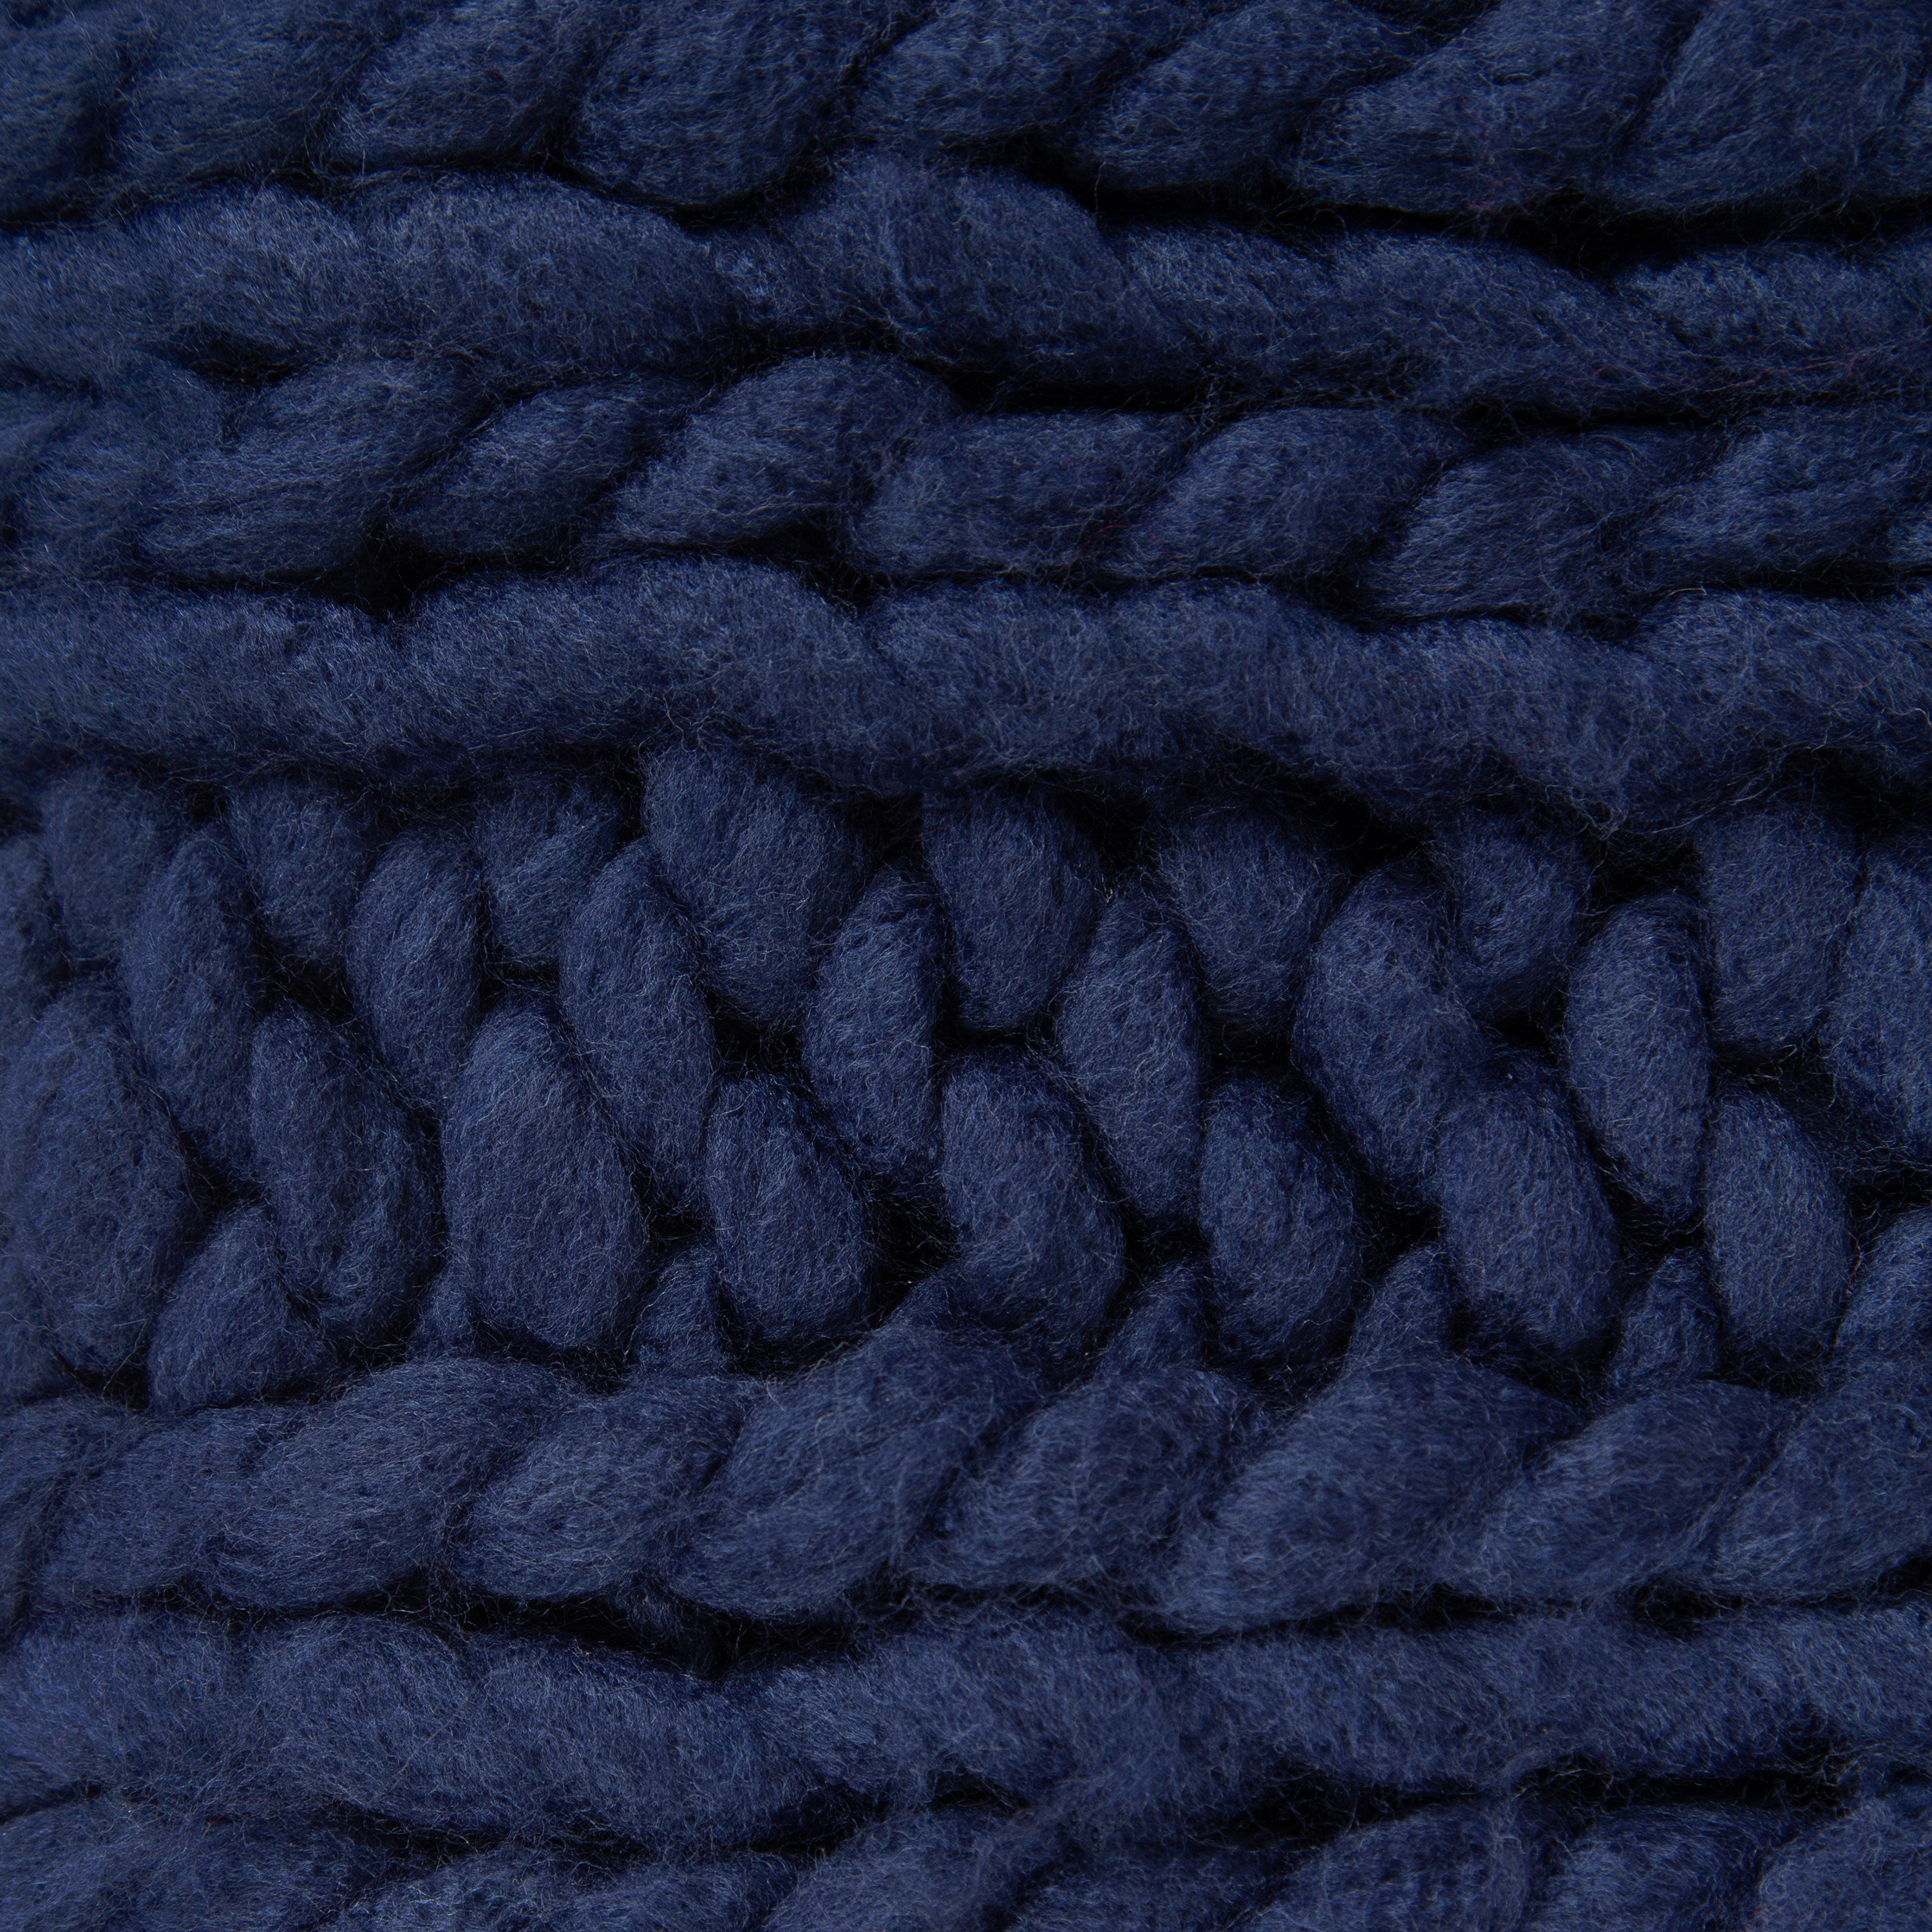 Chunky Knit Blanket - Mon, Jan 03 6:30PM at Pasadena